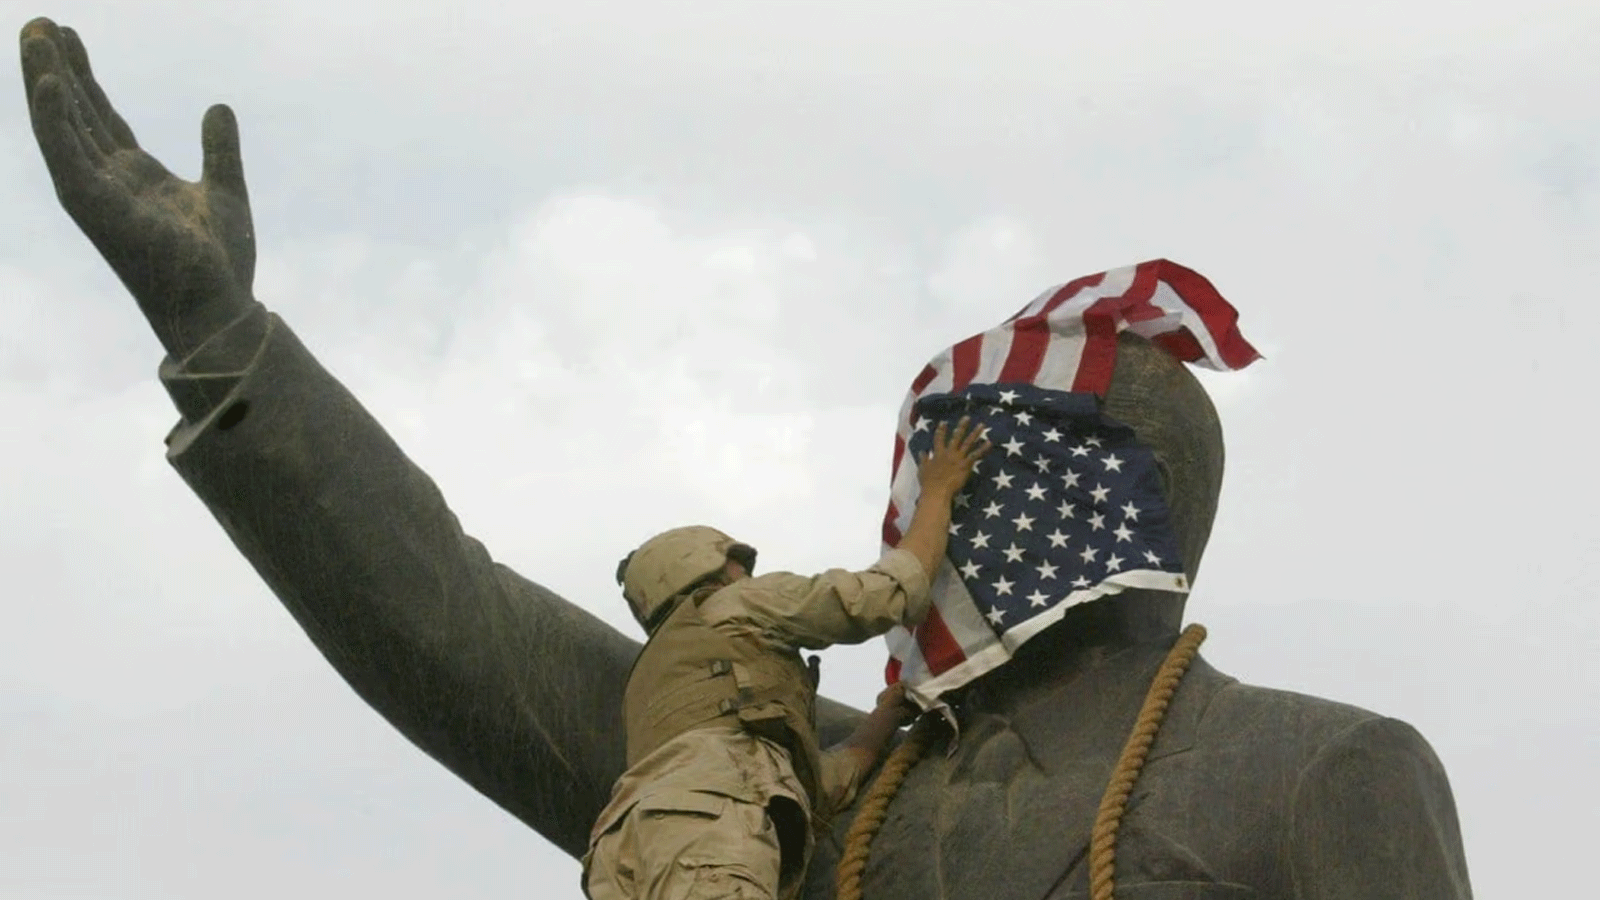 جندي من مشاة البحرية الأميركية يغطي وجه تمثال صدام حسين بعلم الولايات المتحدة في ساحة الفردوس ببغداد. 9 نيسان\أبريل 2003